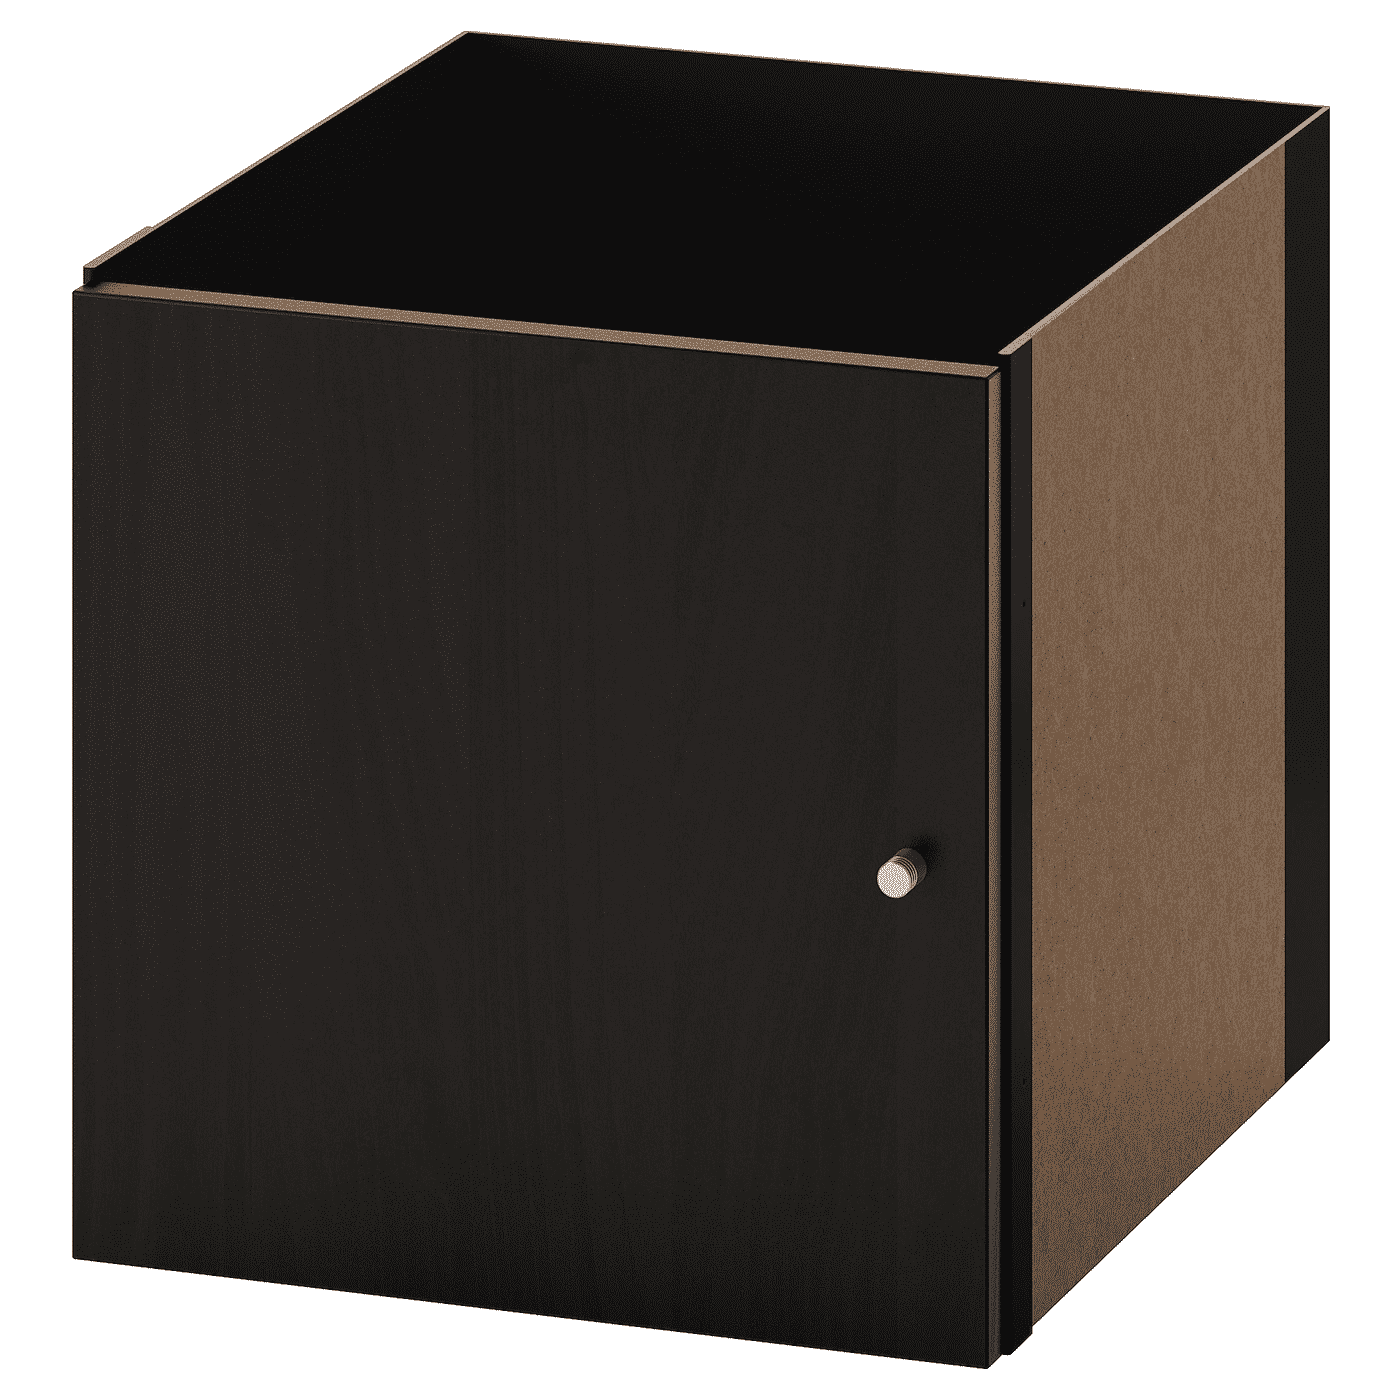 KALLAX Insert with door, black-brown